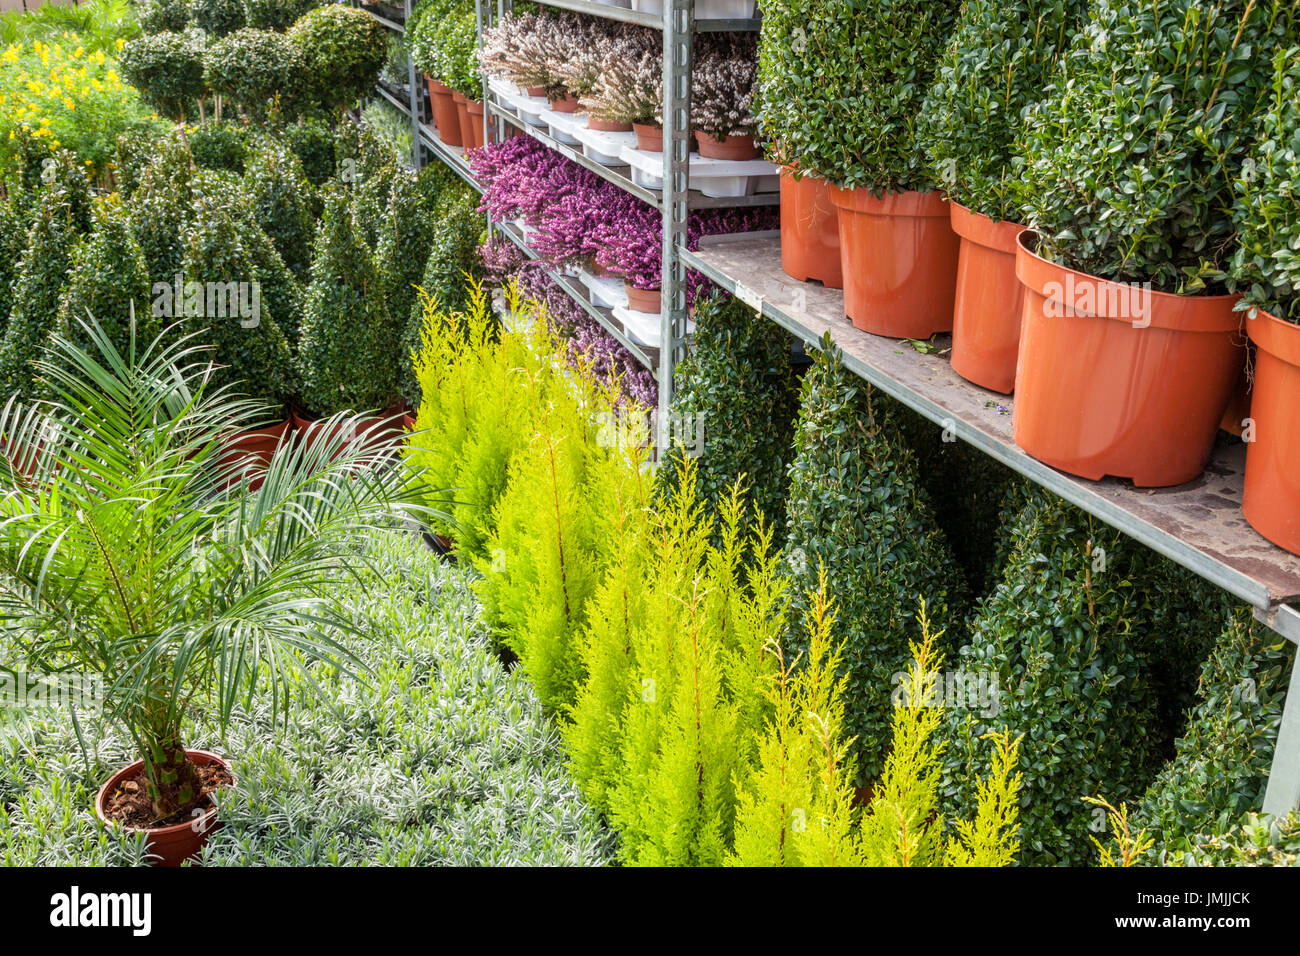 Viele Topfpflanzen auf dem Boden und in Regalen gestapelt, Großbritannien Stockfoto